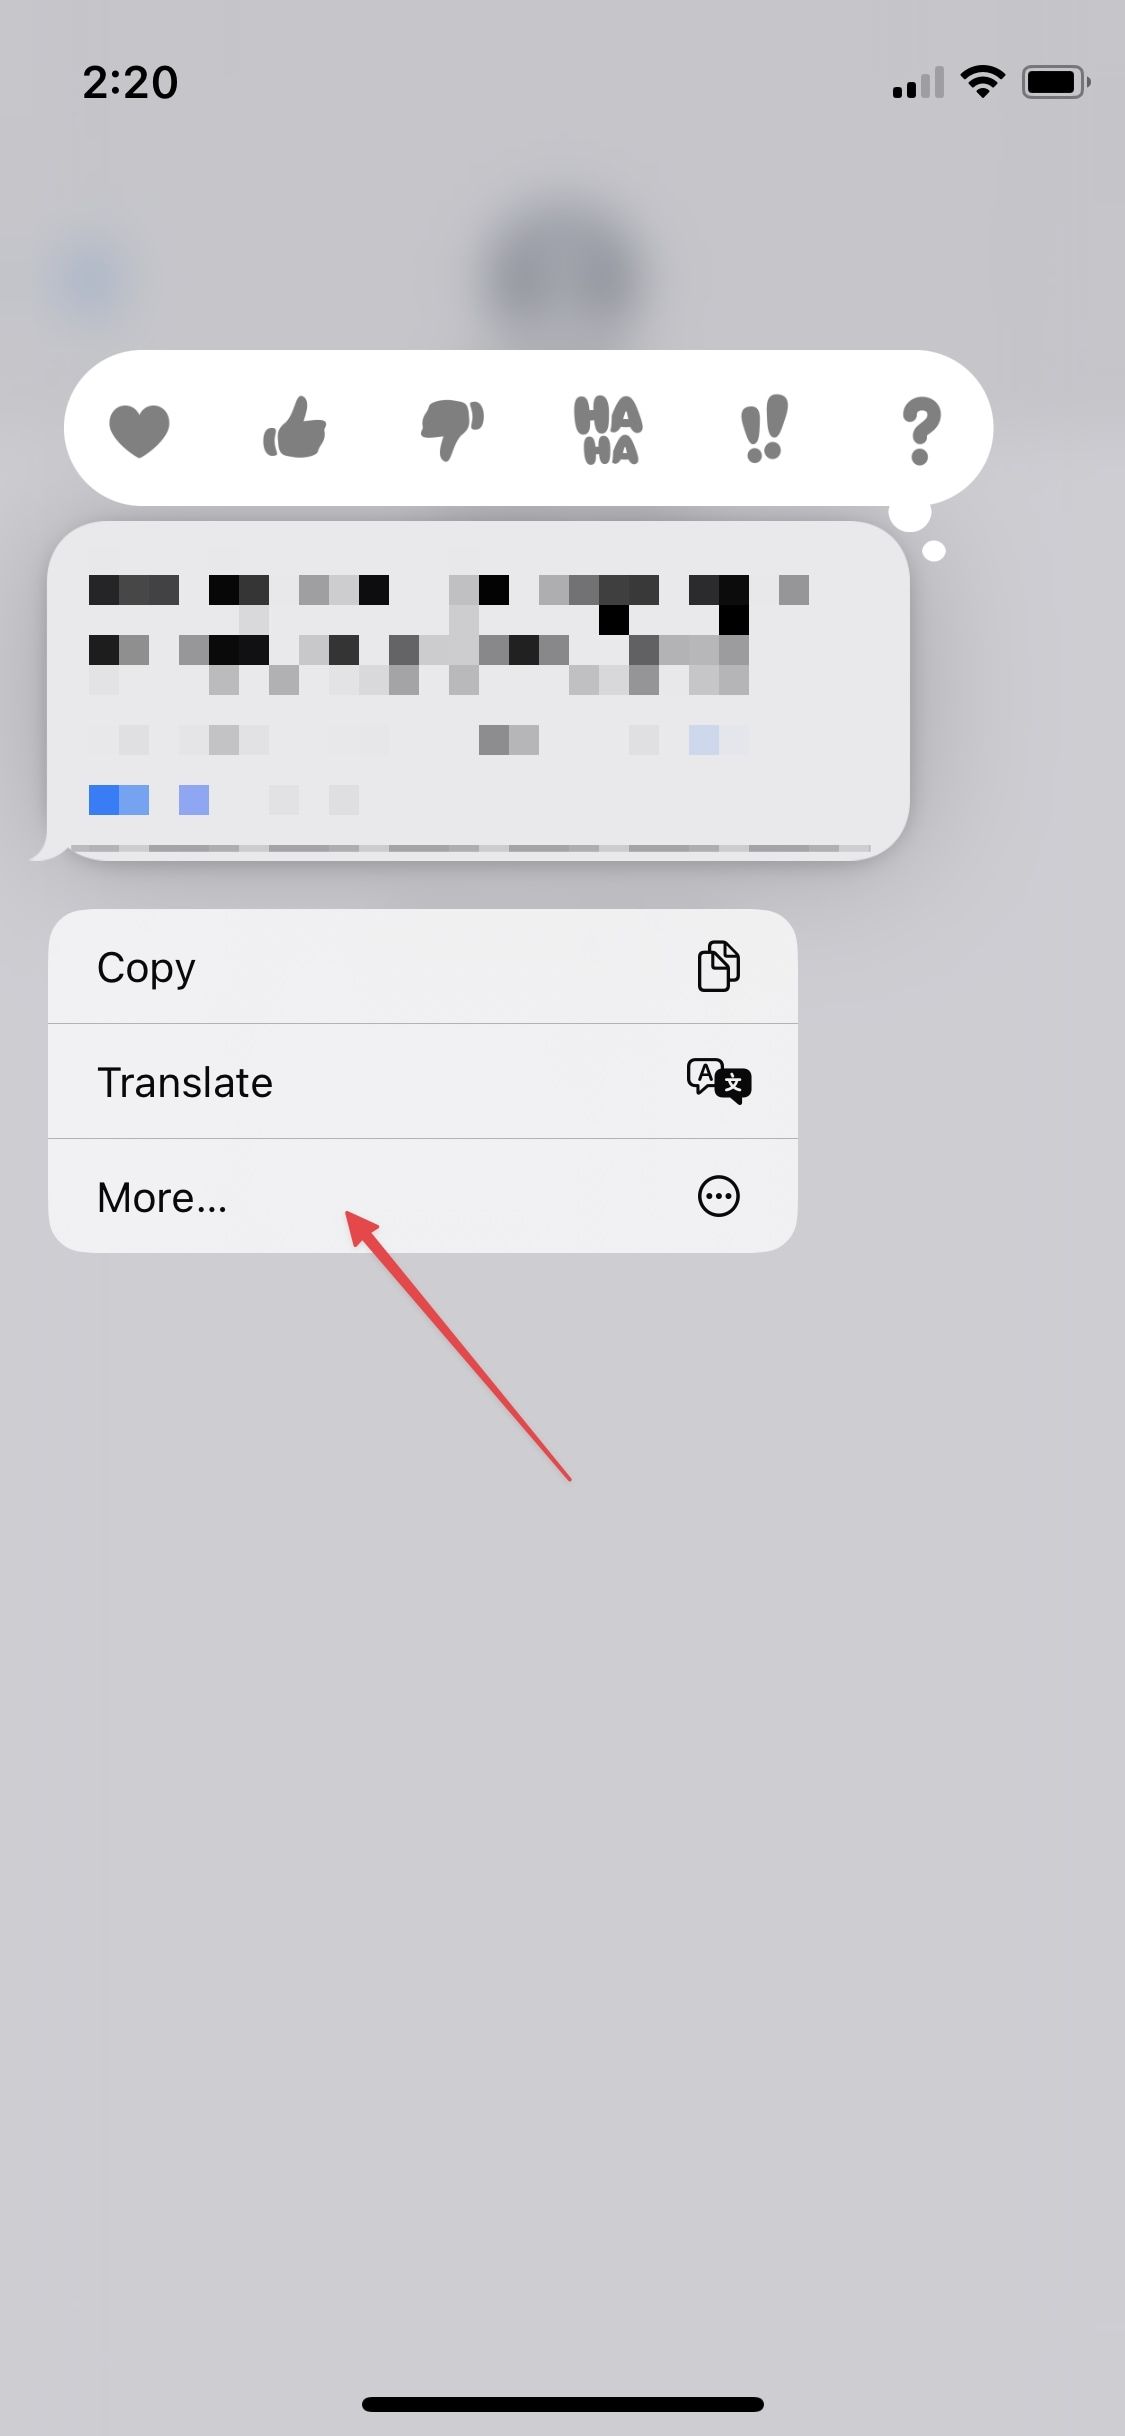 Uma captura de tela exibindo uma janela pop-up em um bate-papo do iMessage, oferecendo três opções: ‘Copiar’, ‘Traduzir’ e ‘Mais’.  A opção ‘Mais’ está selecionada, indicada por uma seta apontando para ela.